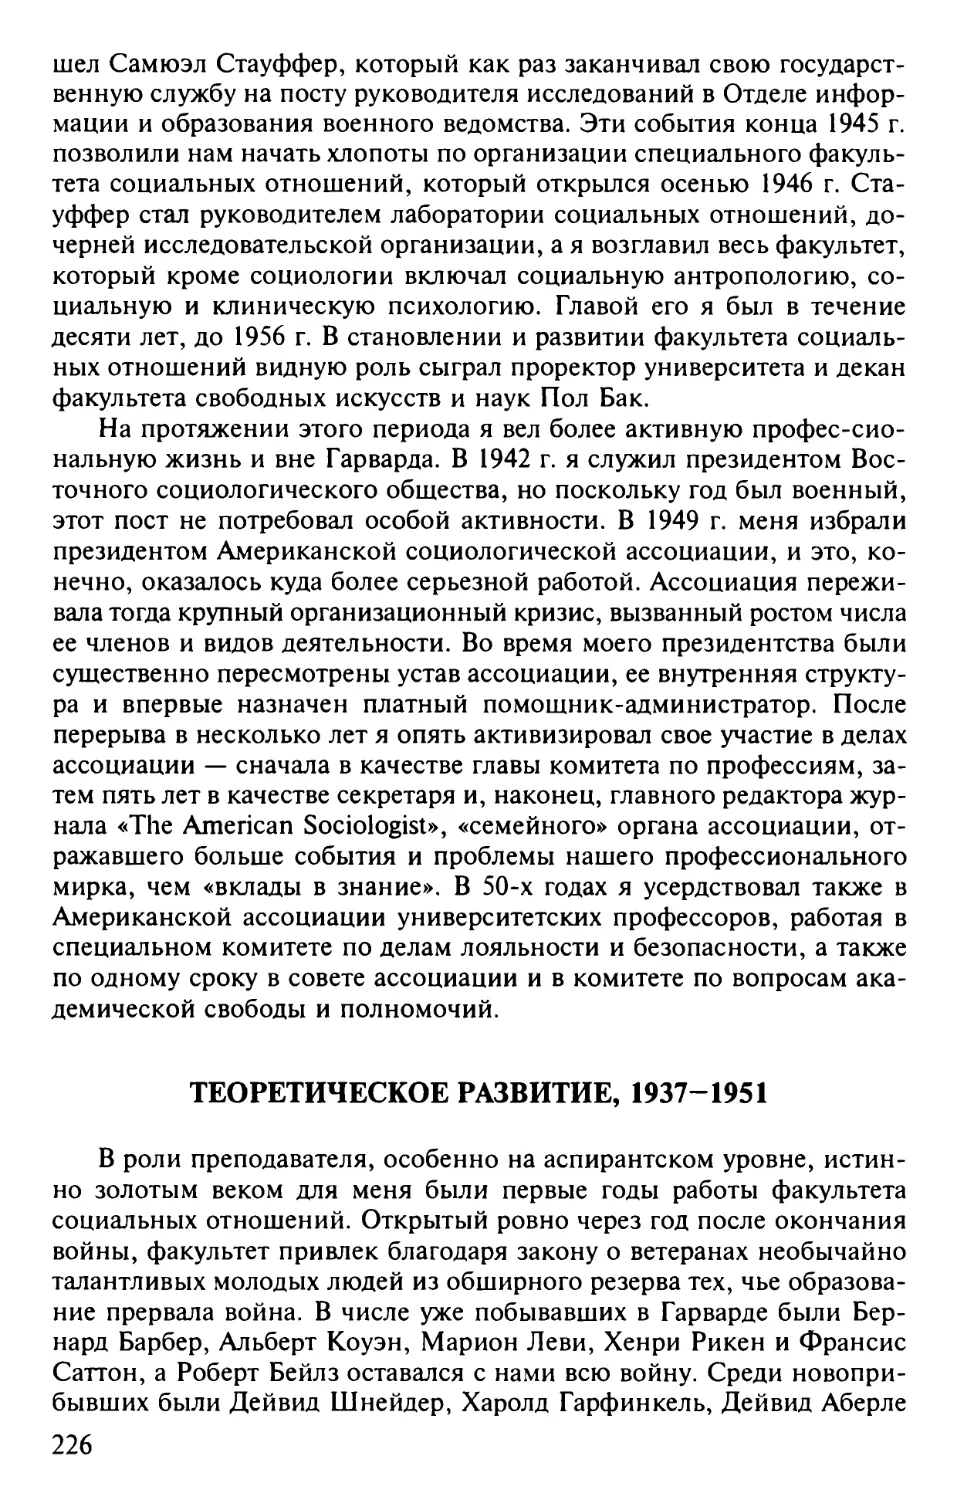 Теоретическое развитие, 1937-1951